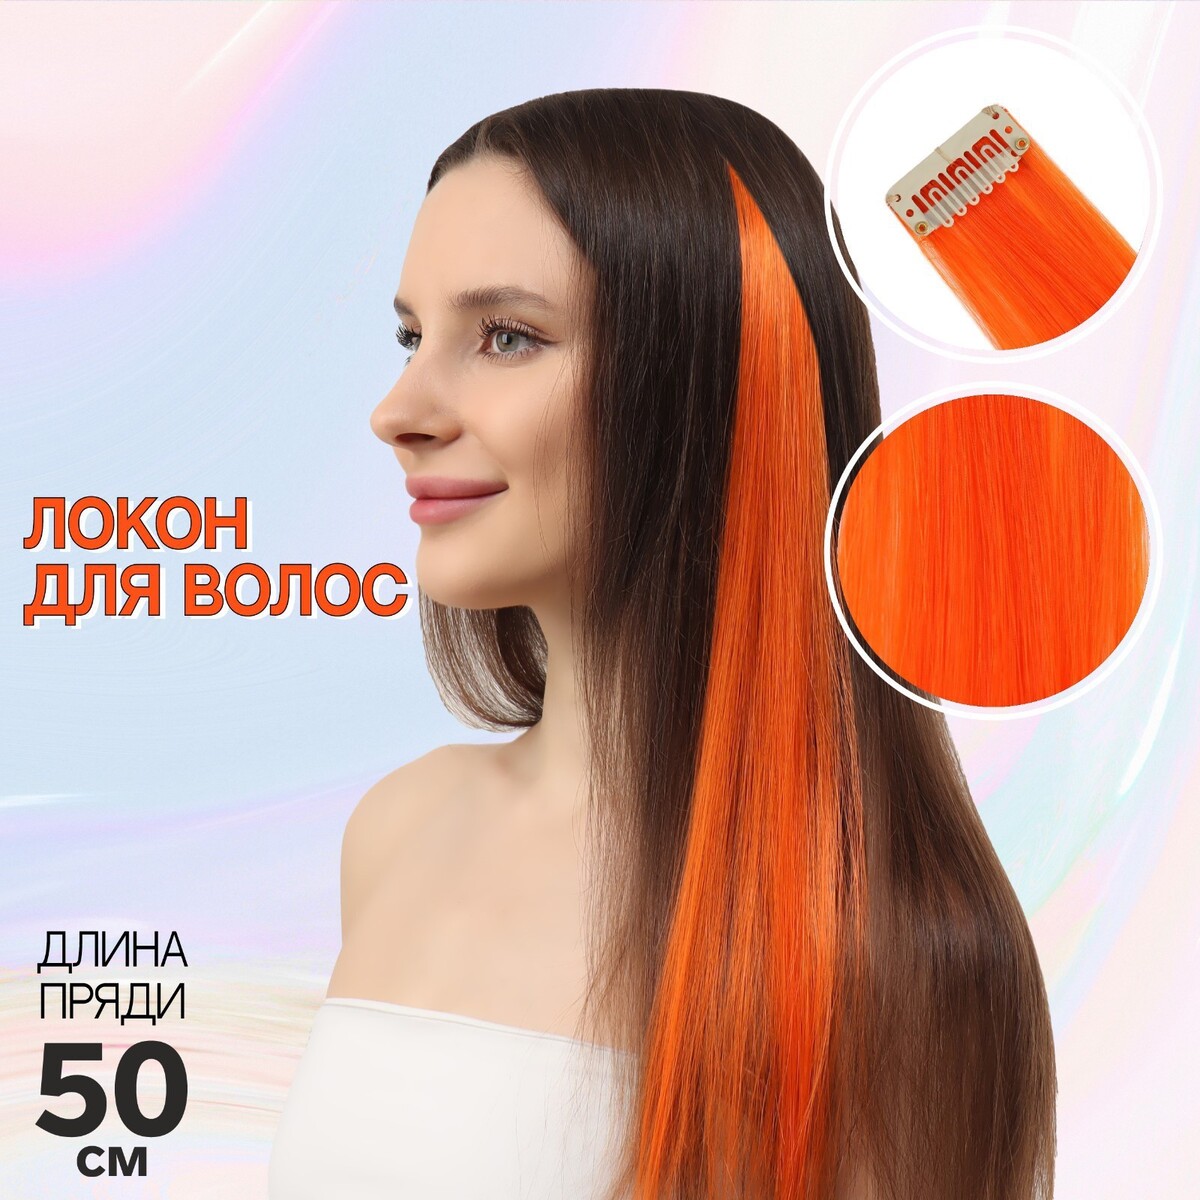 Локон накладной, прямой волос, на заколке, 50 см, 5 гр, цвет оранжевый локон накладной прямой волос на заколке 50 см 5 гр каштановый